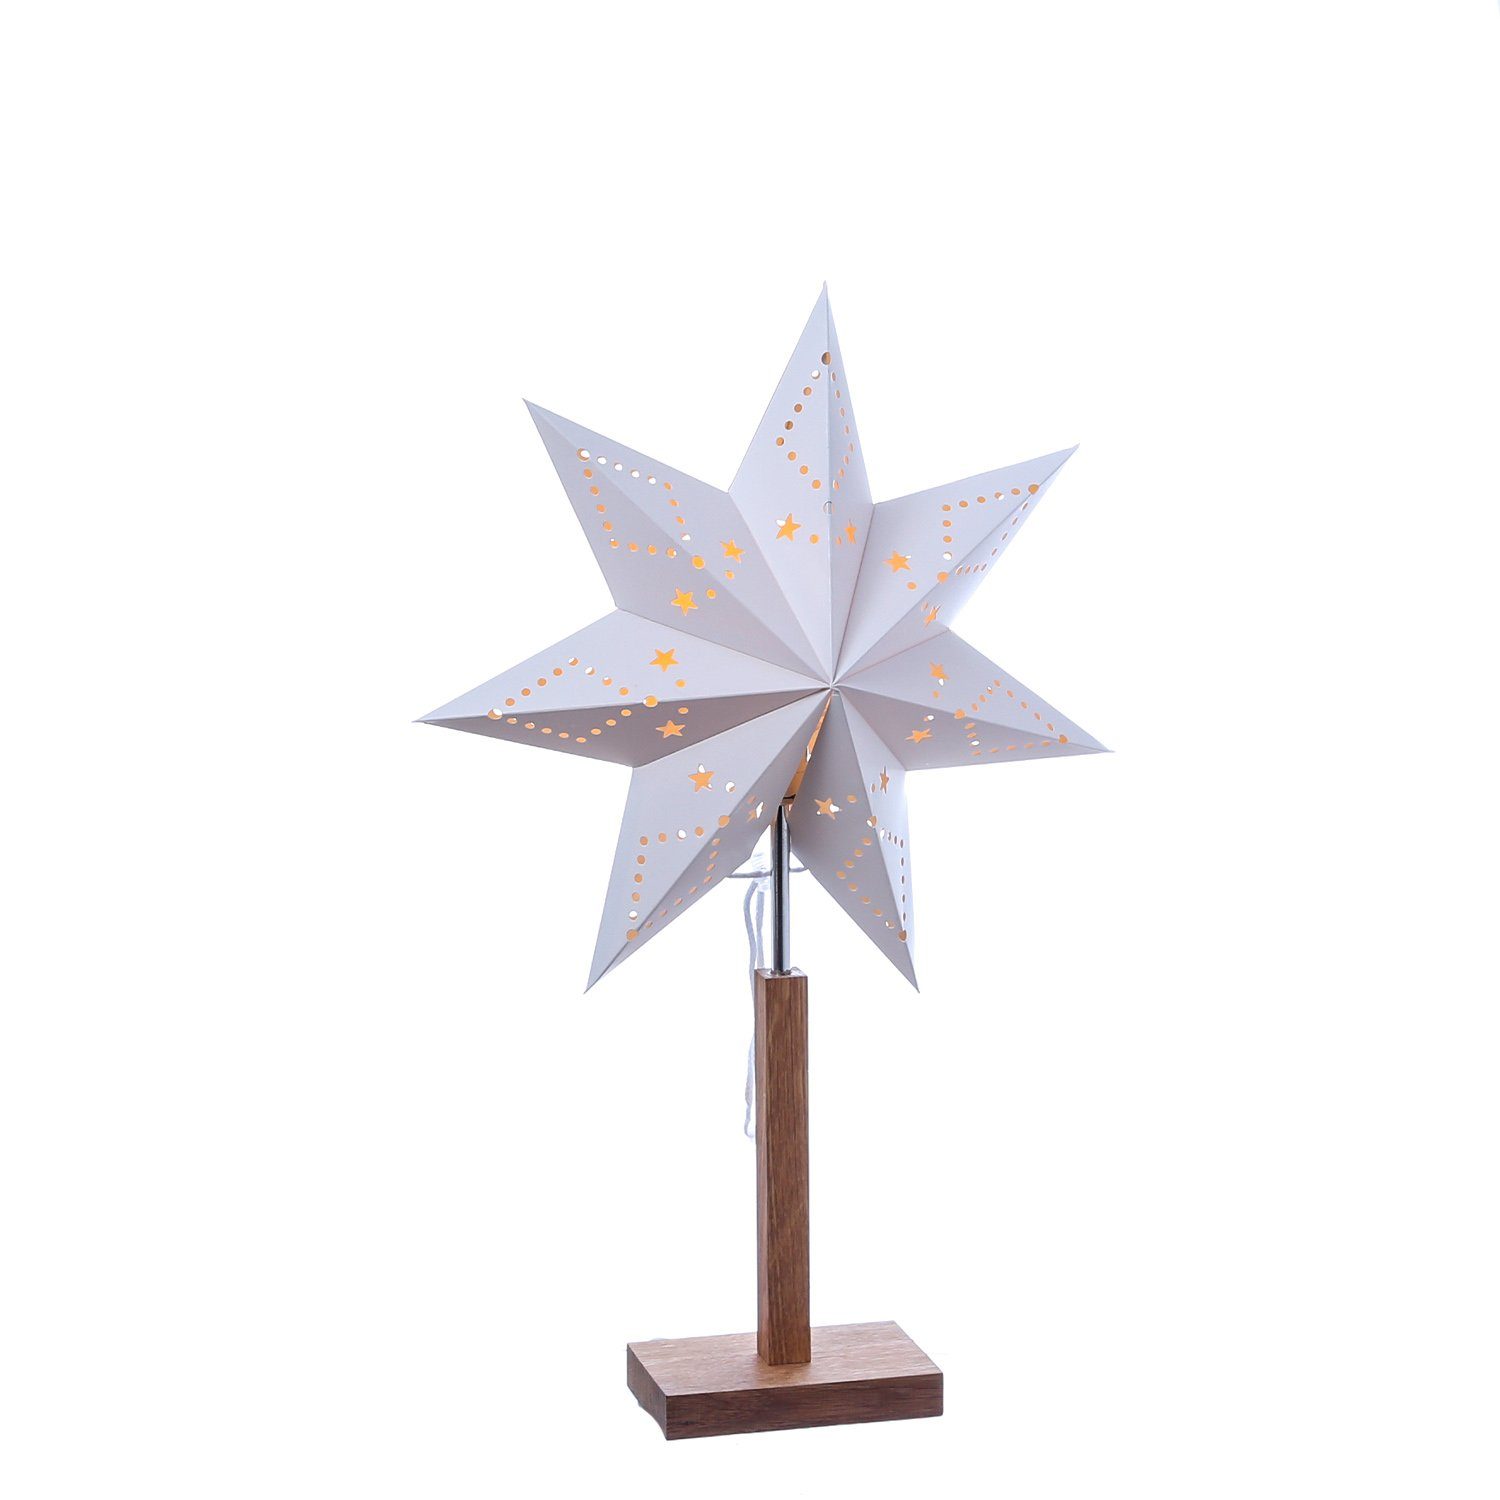 Lisa Fassung Papierstern E14 Stern Weihnachtsstern MARELIDA 52cm LED Leuchtstern